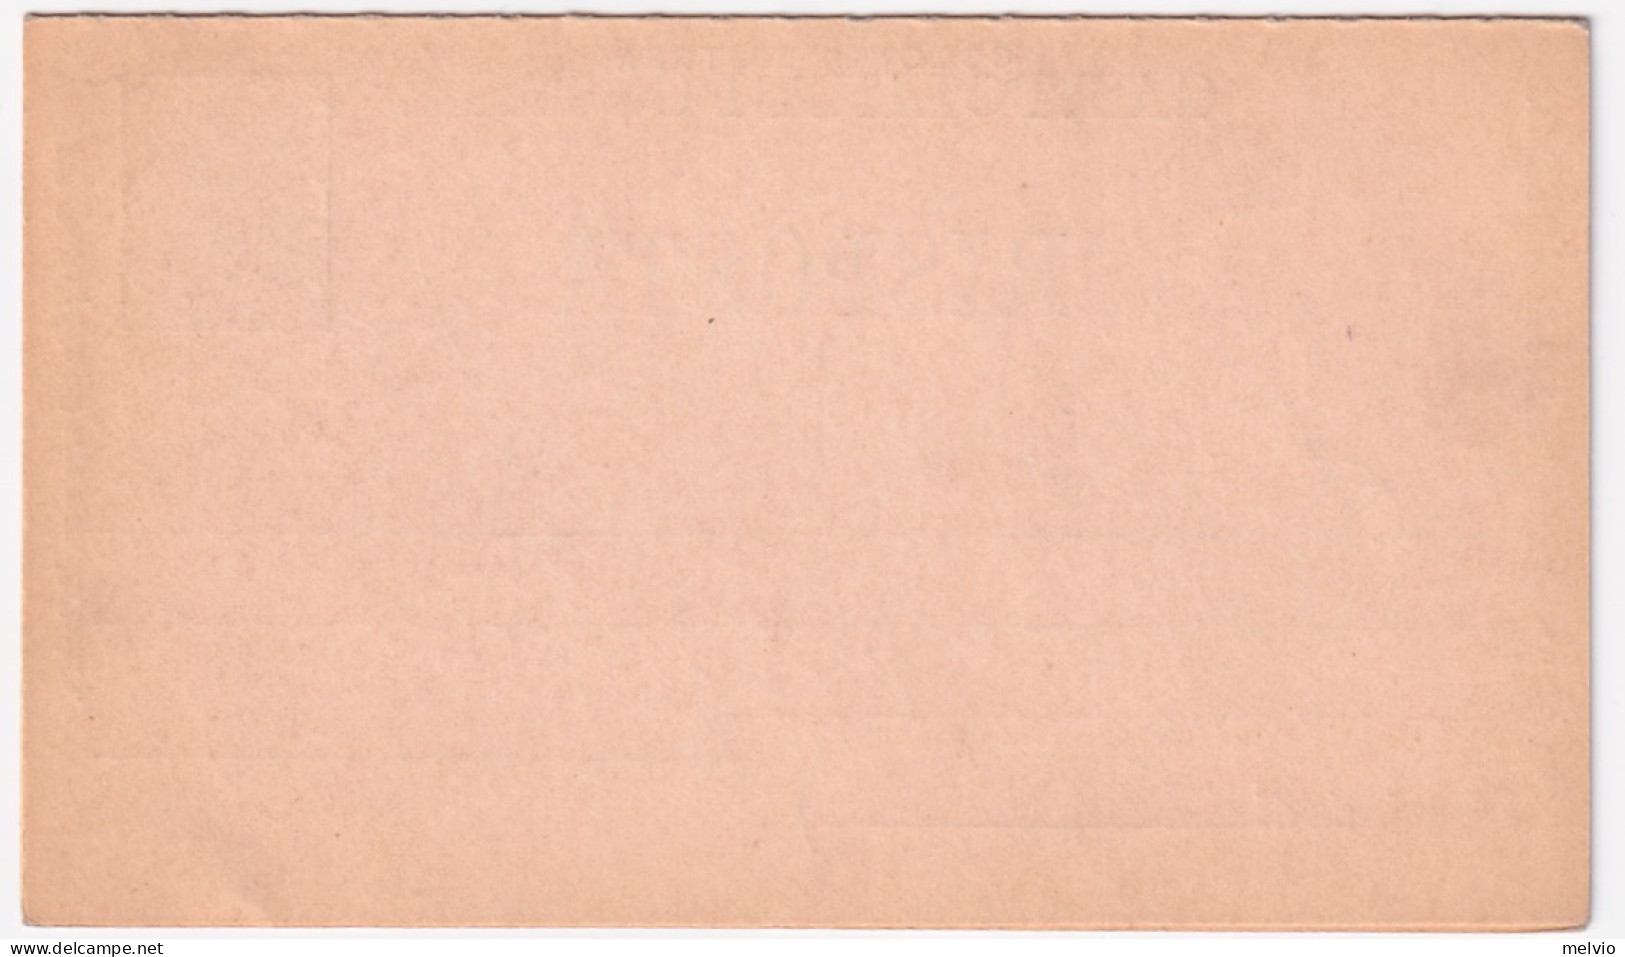 1892-ERITREA Cartolina Postale RP 7,1/2 + 7,1/2 Mill. 92 (C4) Nuova - Erythrée